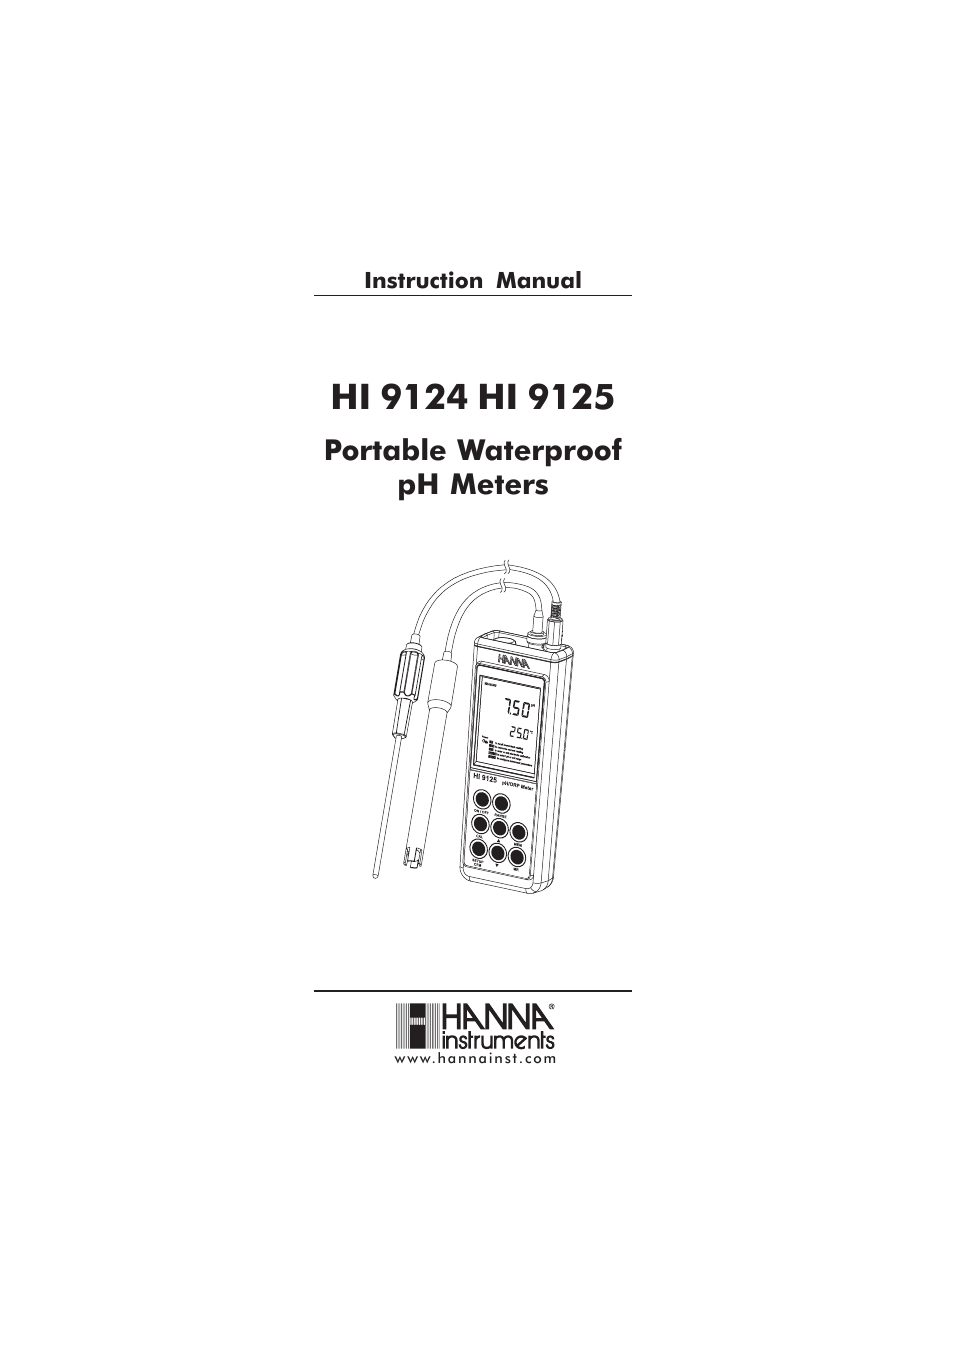 HI 9125